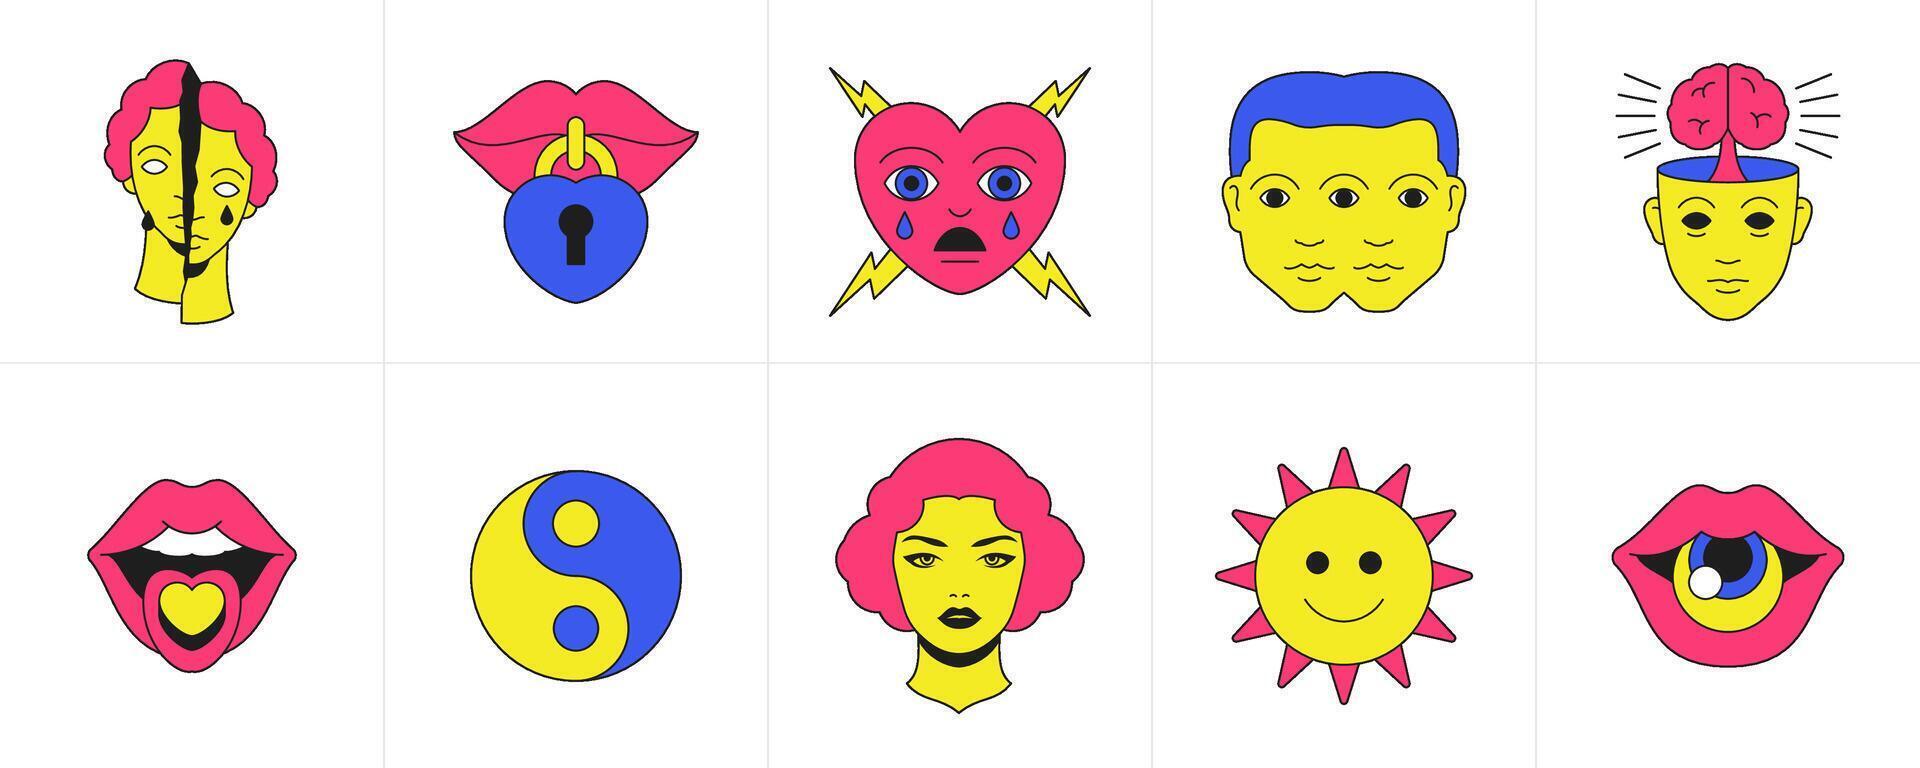 marrant dessin animé emoji surréaliste éléments bande dessinée branché psychédélique bizarre sensationnel icône ensemble vecteur plat